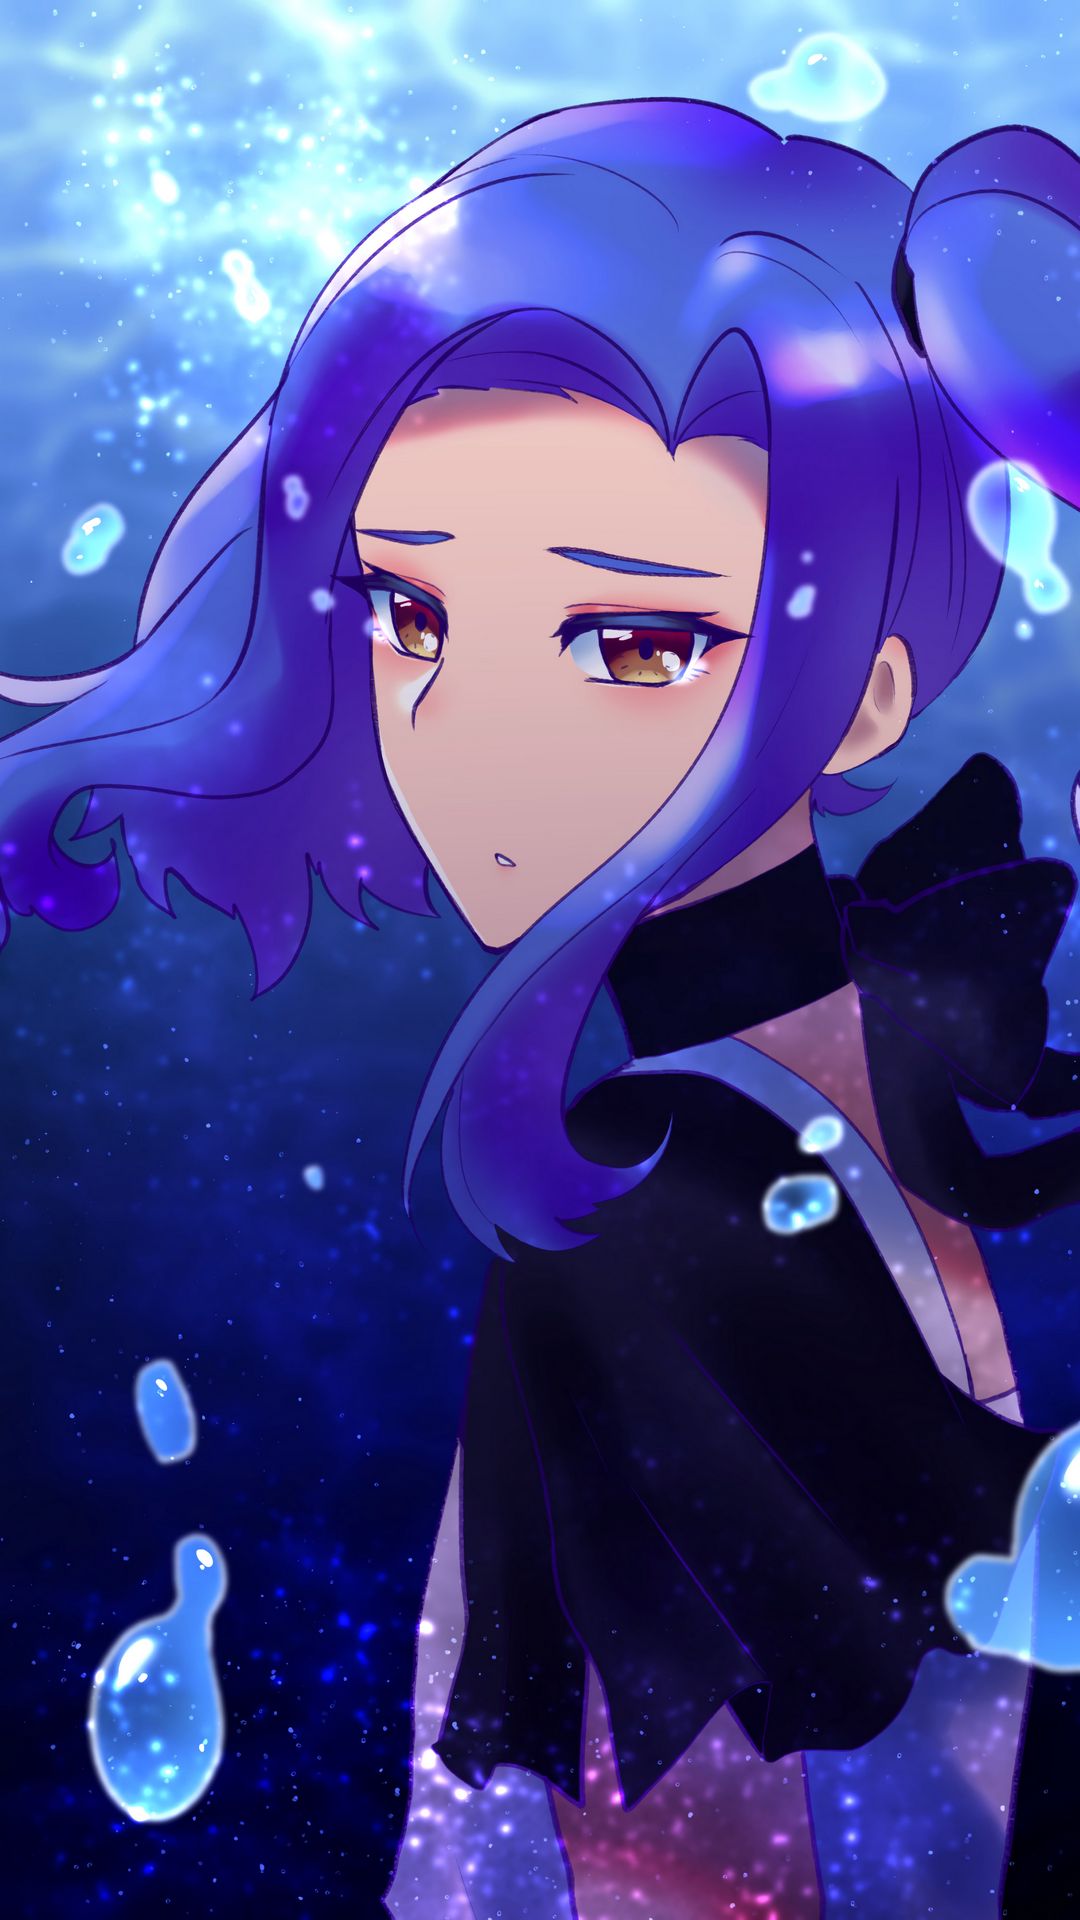 anime girl in water sad